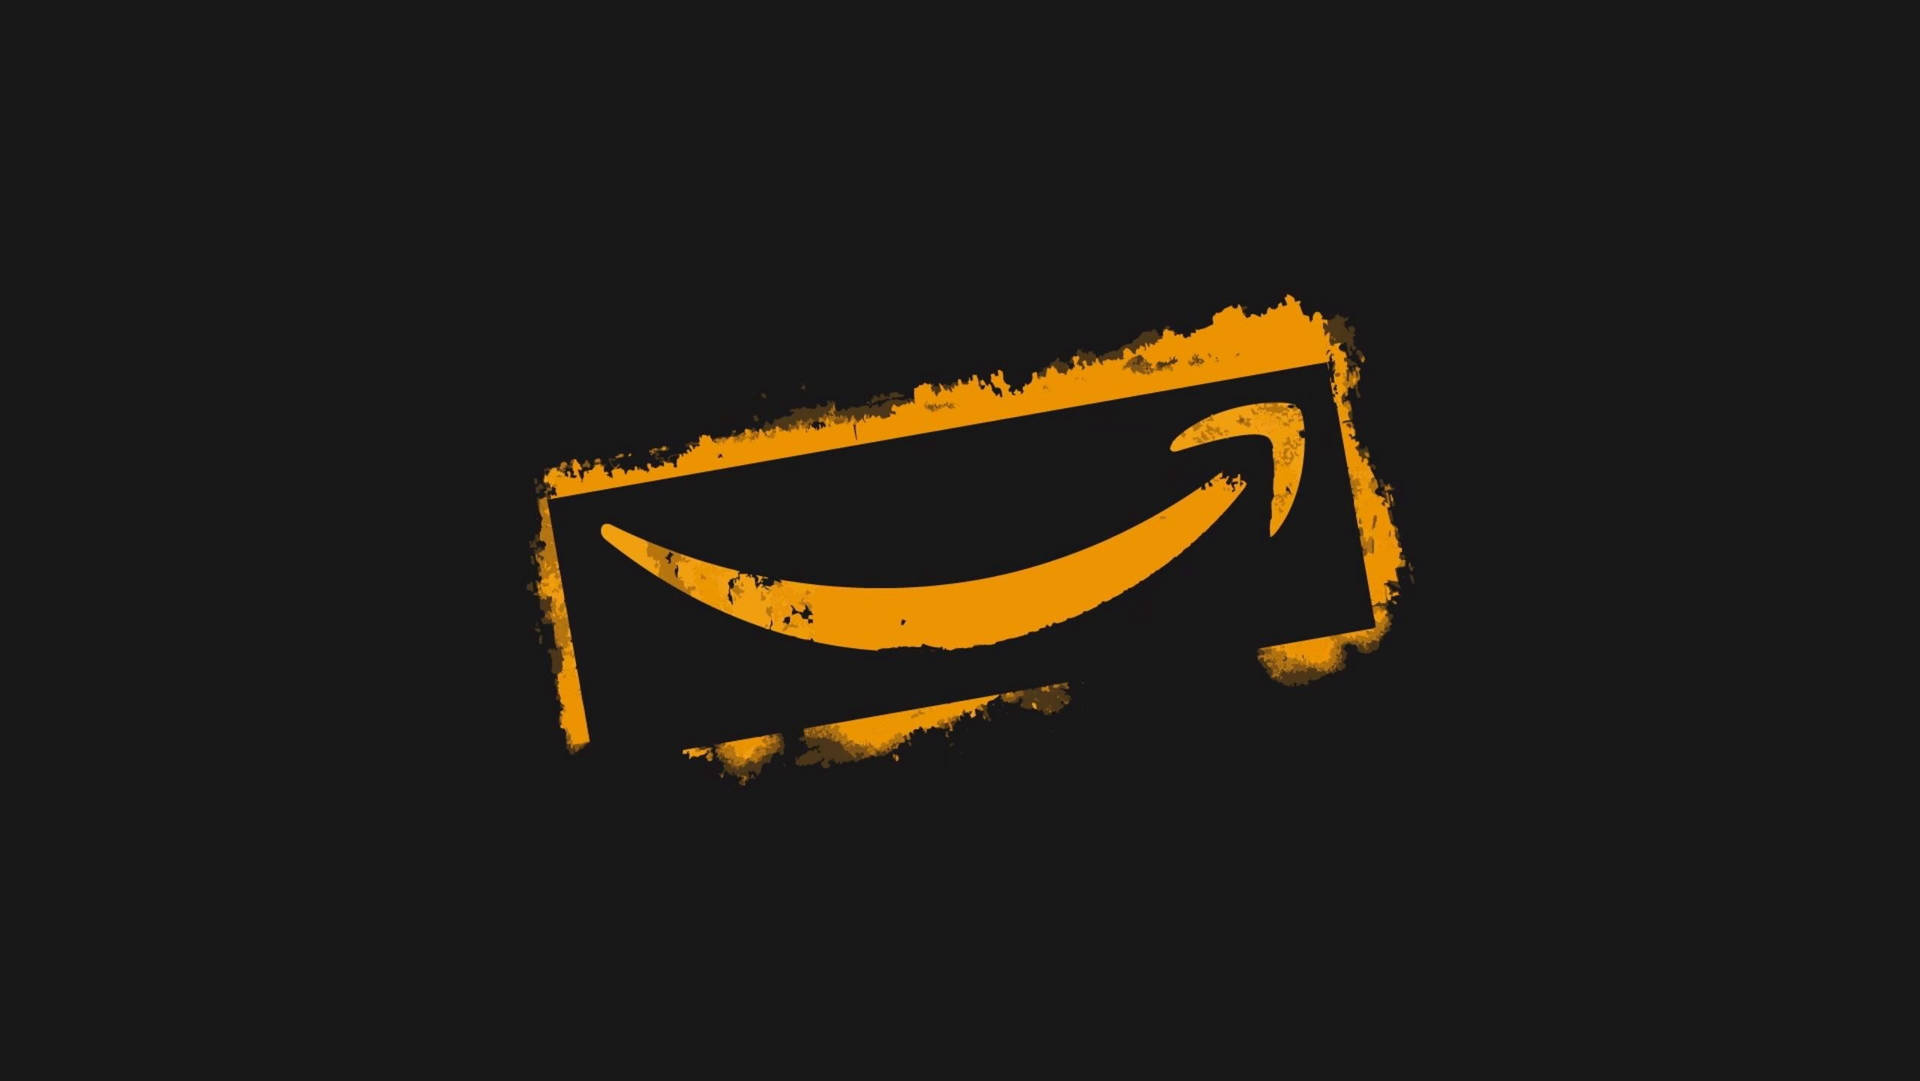 Logotipode Flecha Da Amazon. Papel de Parede